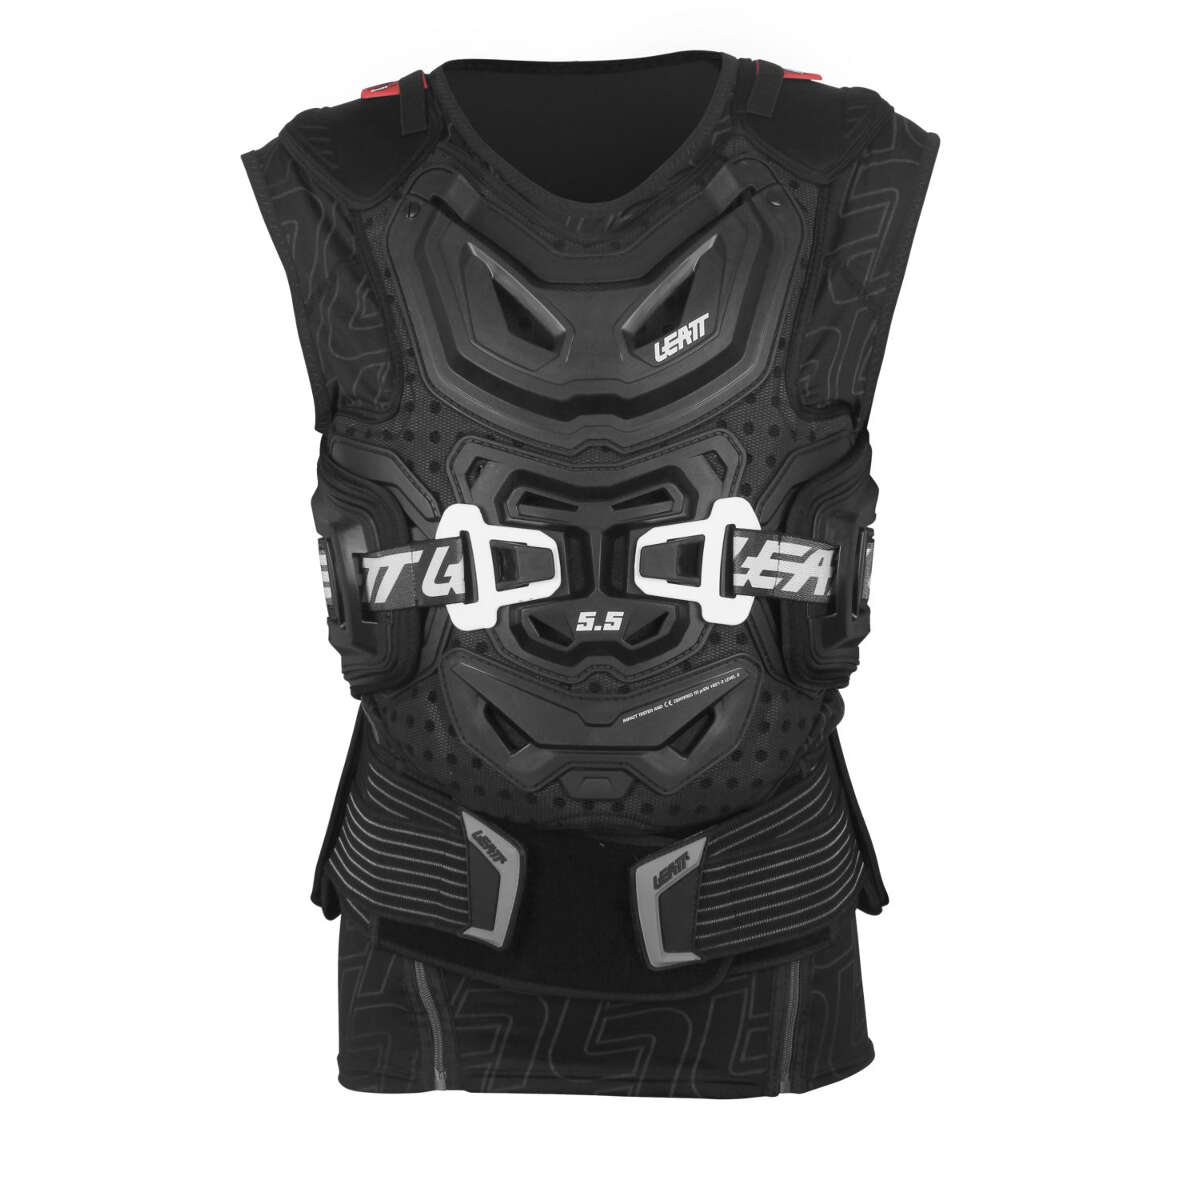 Leatt Protector Vest Body Vest 5.5 Black